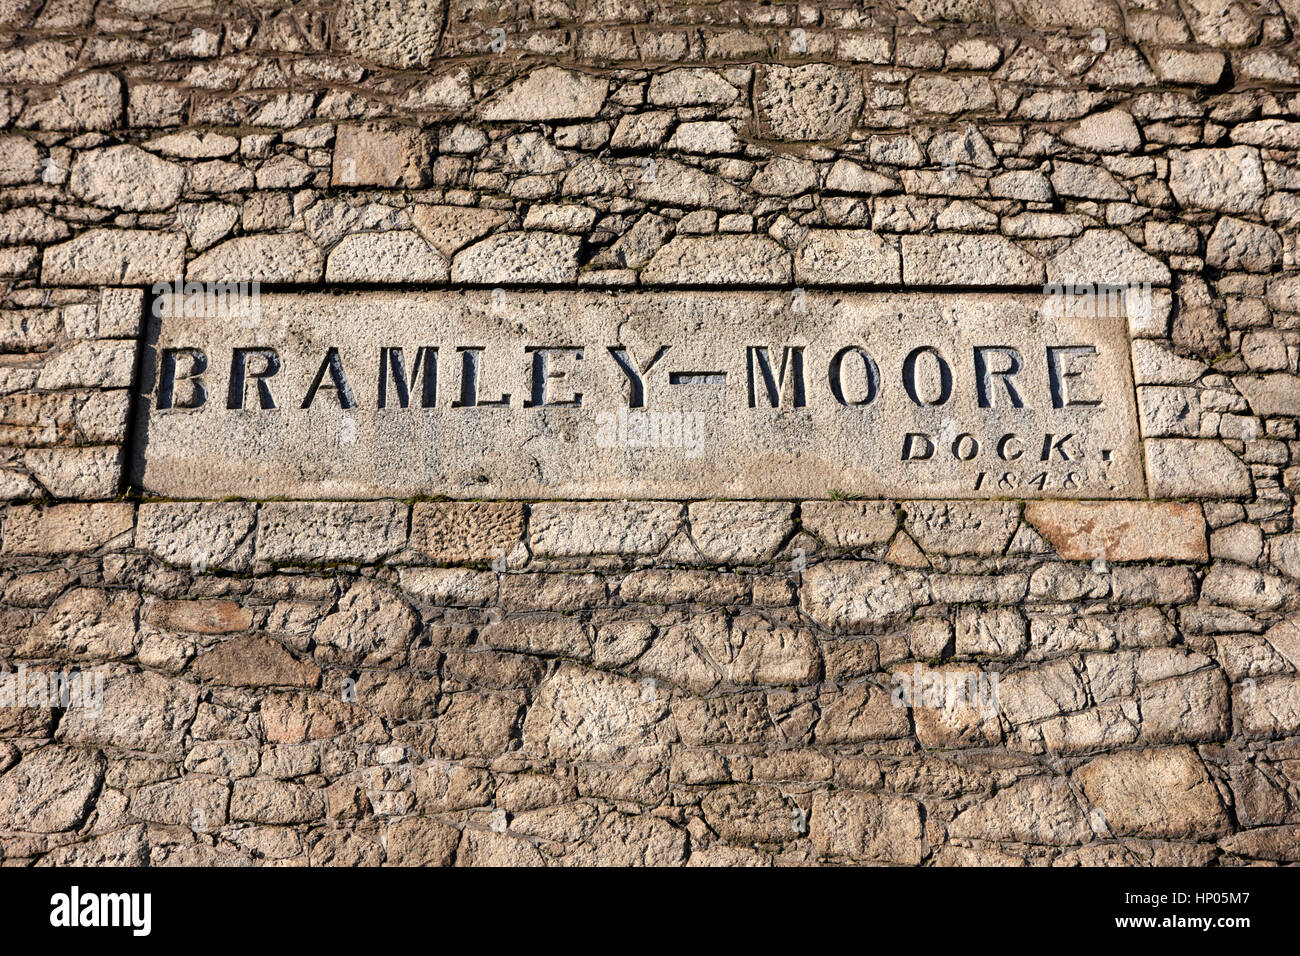 Bramley moore-dock liverpool docks dockland uk Banque D'Images